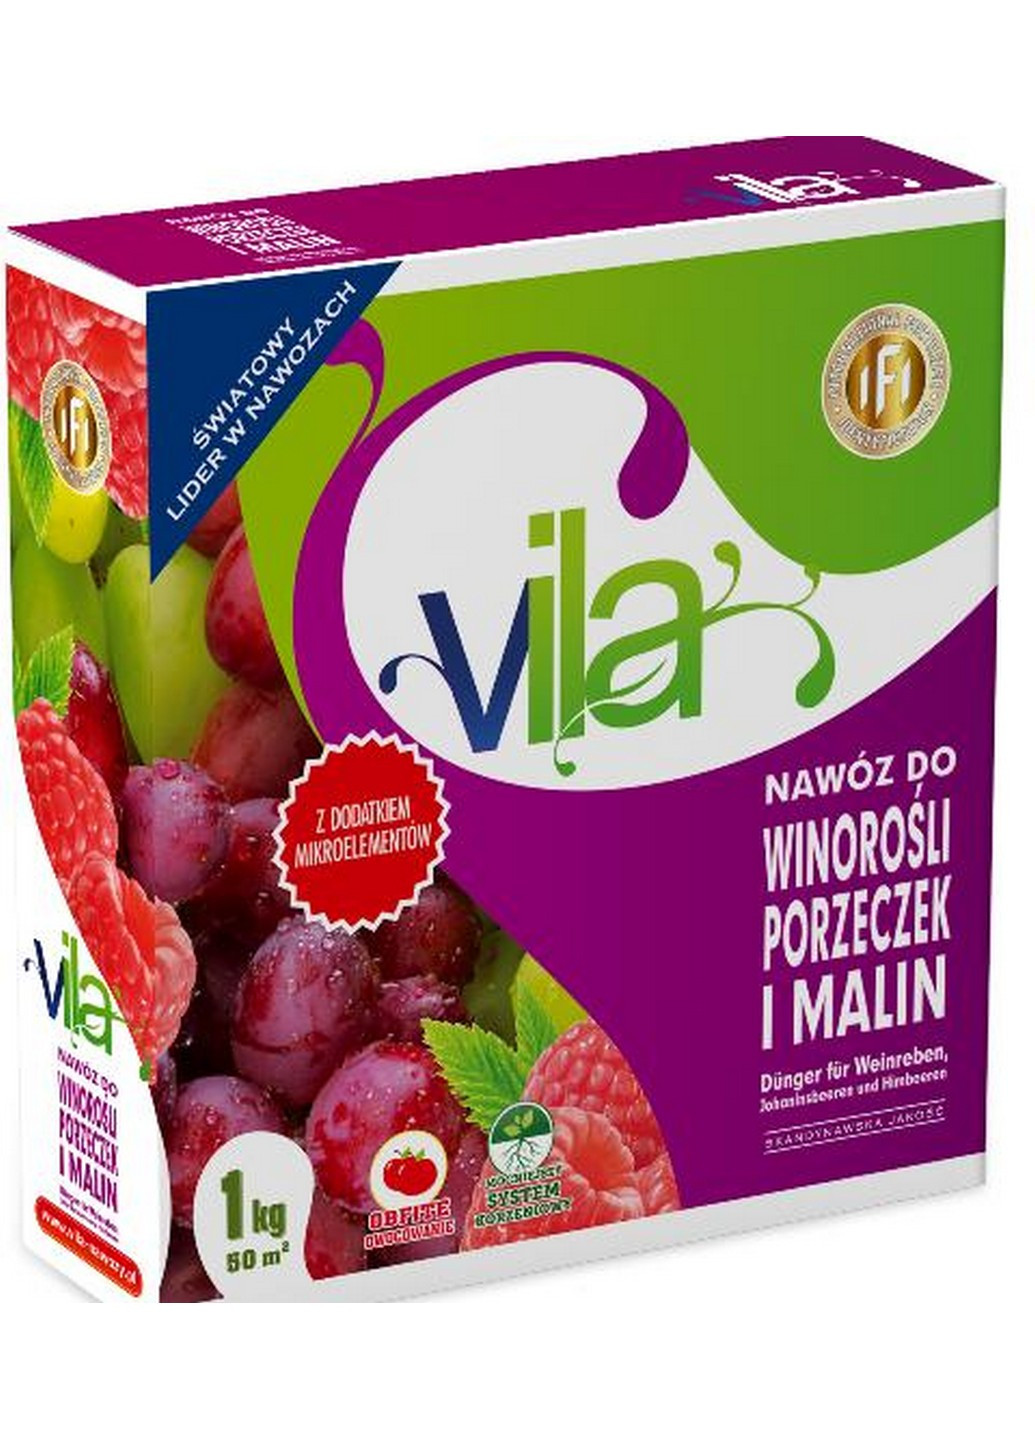 Удобрение Яра Вила ( Vila) для винограда, малины, ежевики, смородины 1 кг Yara (215327197)